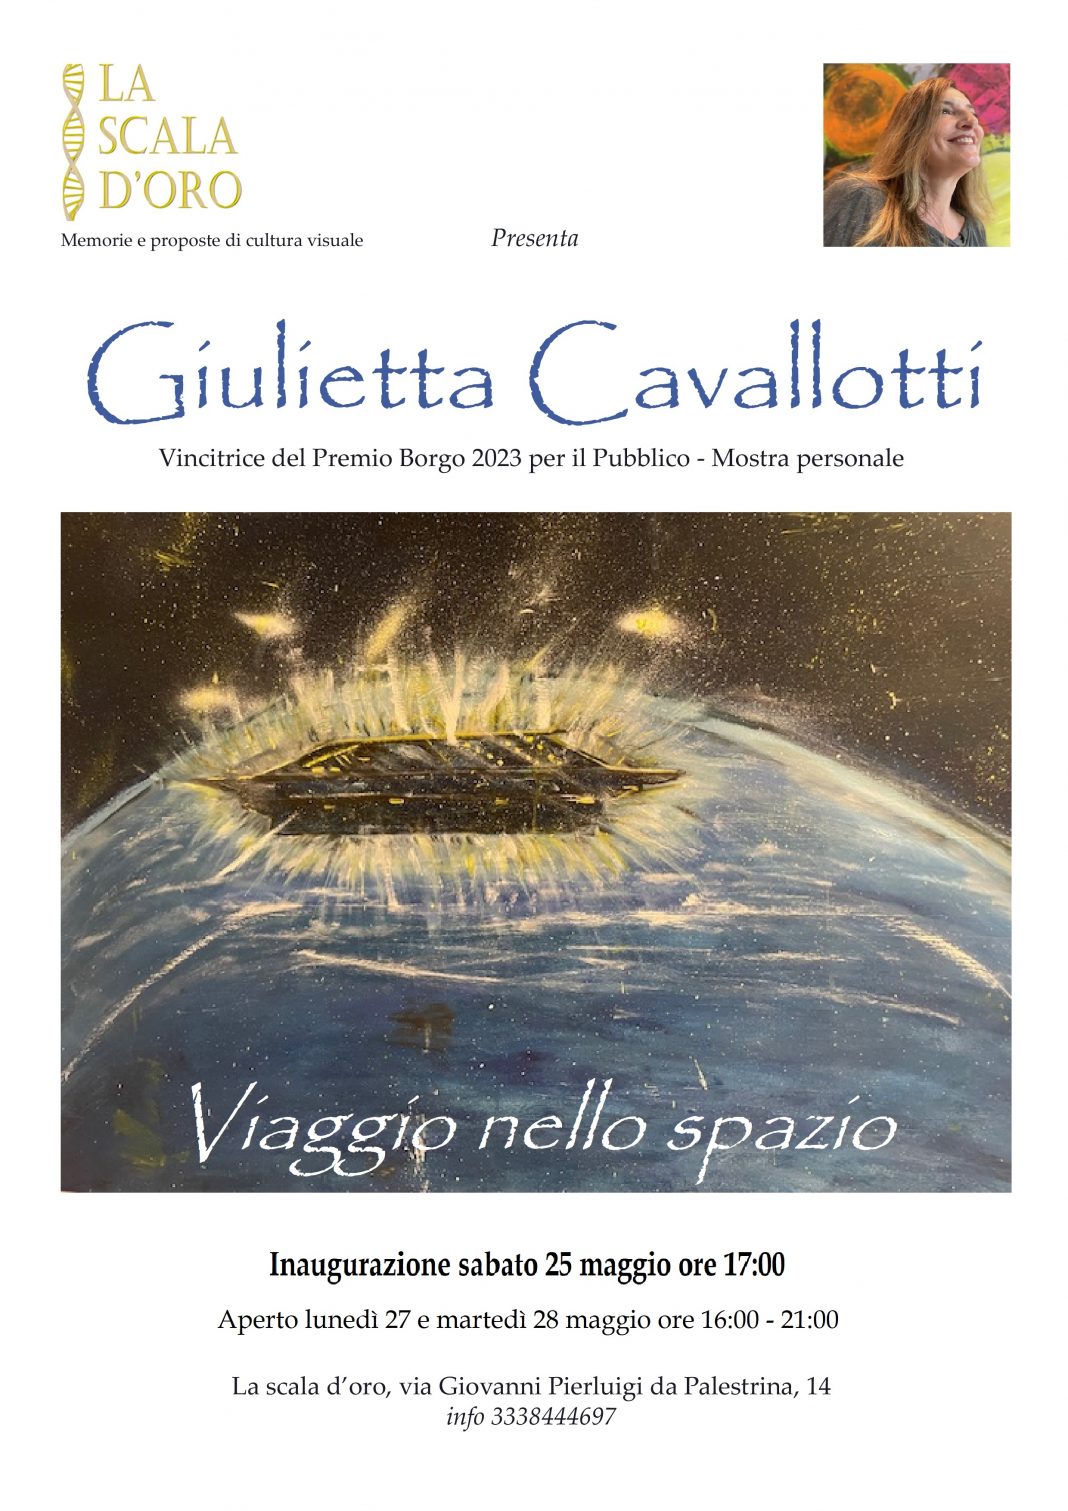 Giulietta Cavallotti – Viaggio nello spaziohttps://www.exibart.com/repository/media/formidable/11/img/d4c/Giulietta-Cavallotti-3-1068x1511.jpg